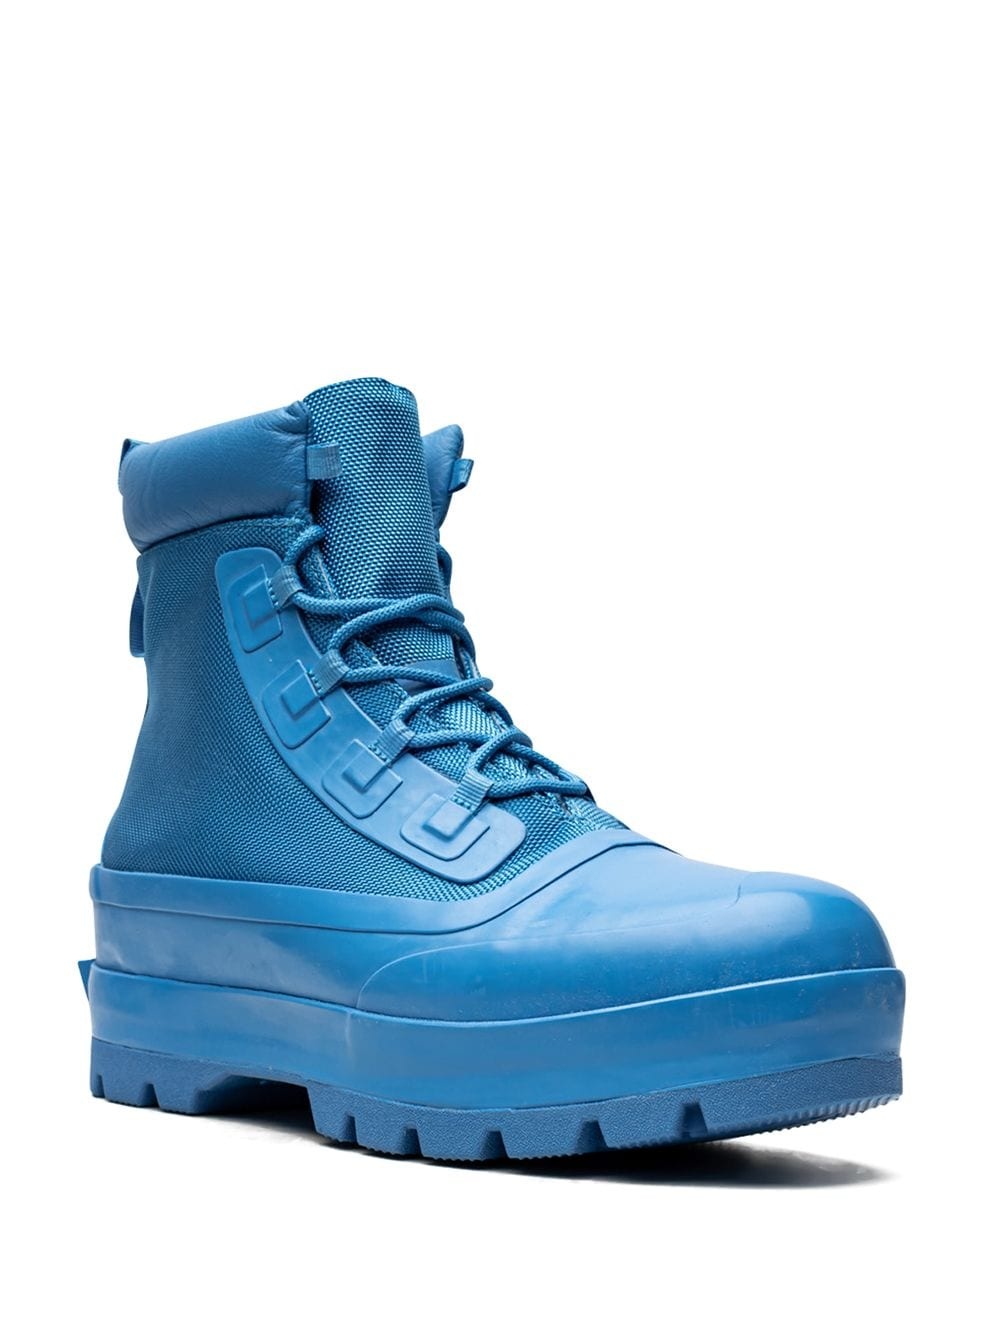 x AMBUSH Chuck Taylor All-Star "Blue" boots - 2